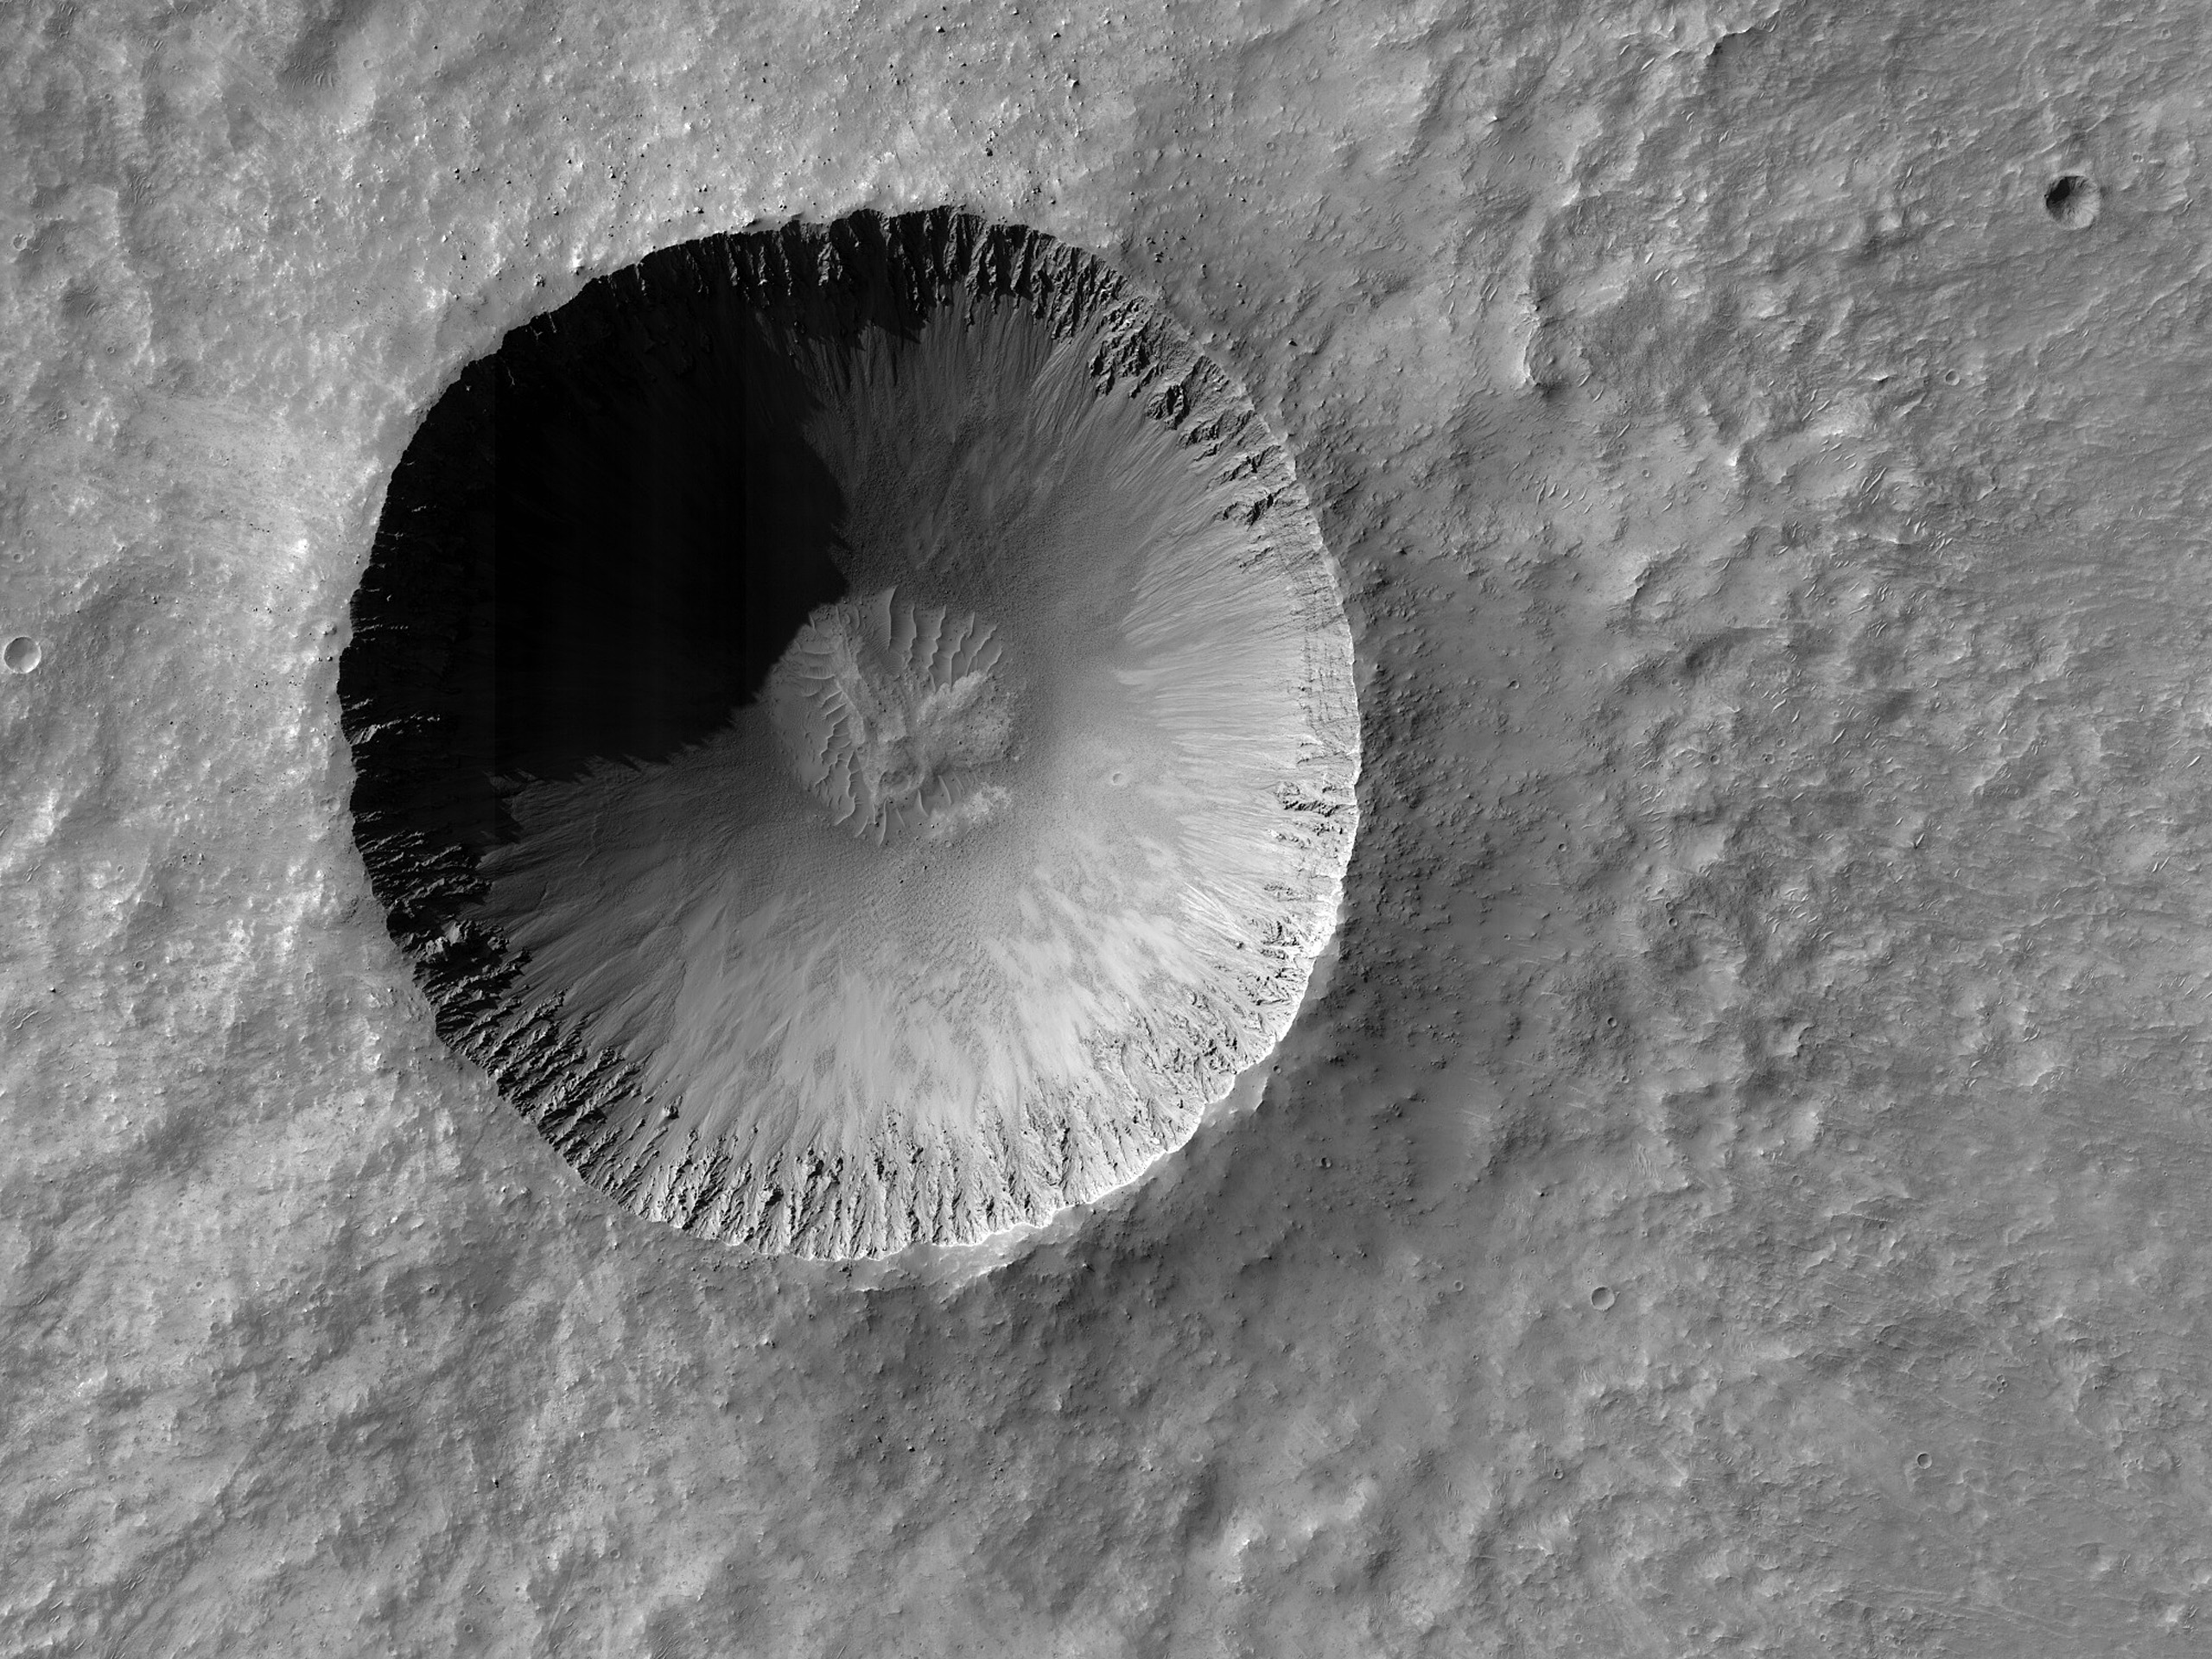 Coprates Chasma’nın kuzeyindeki bir krater